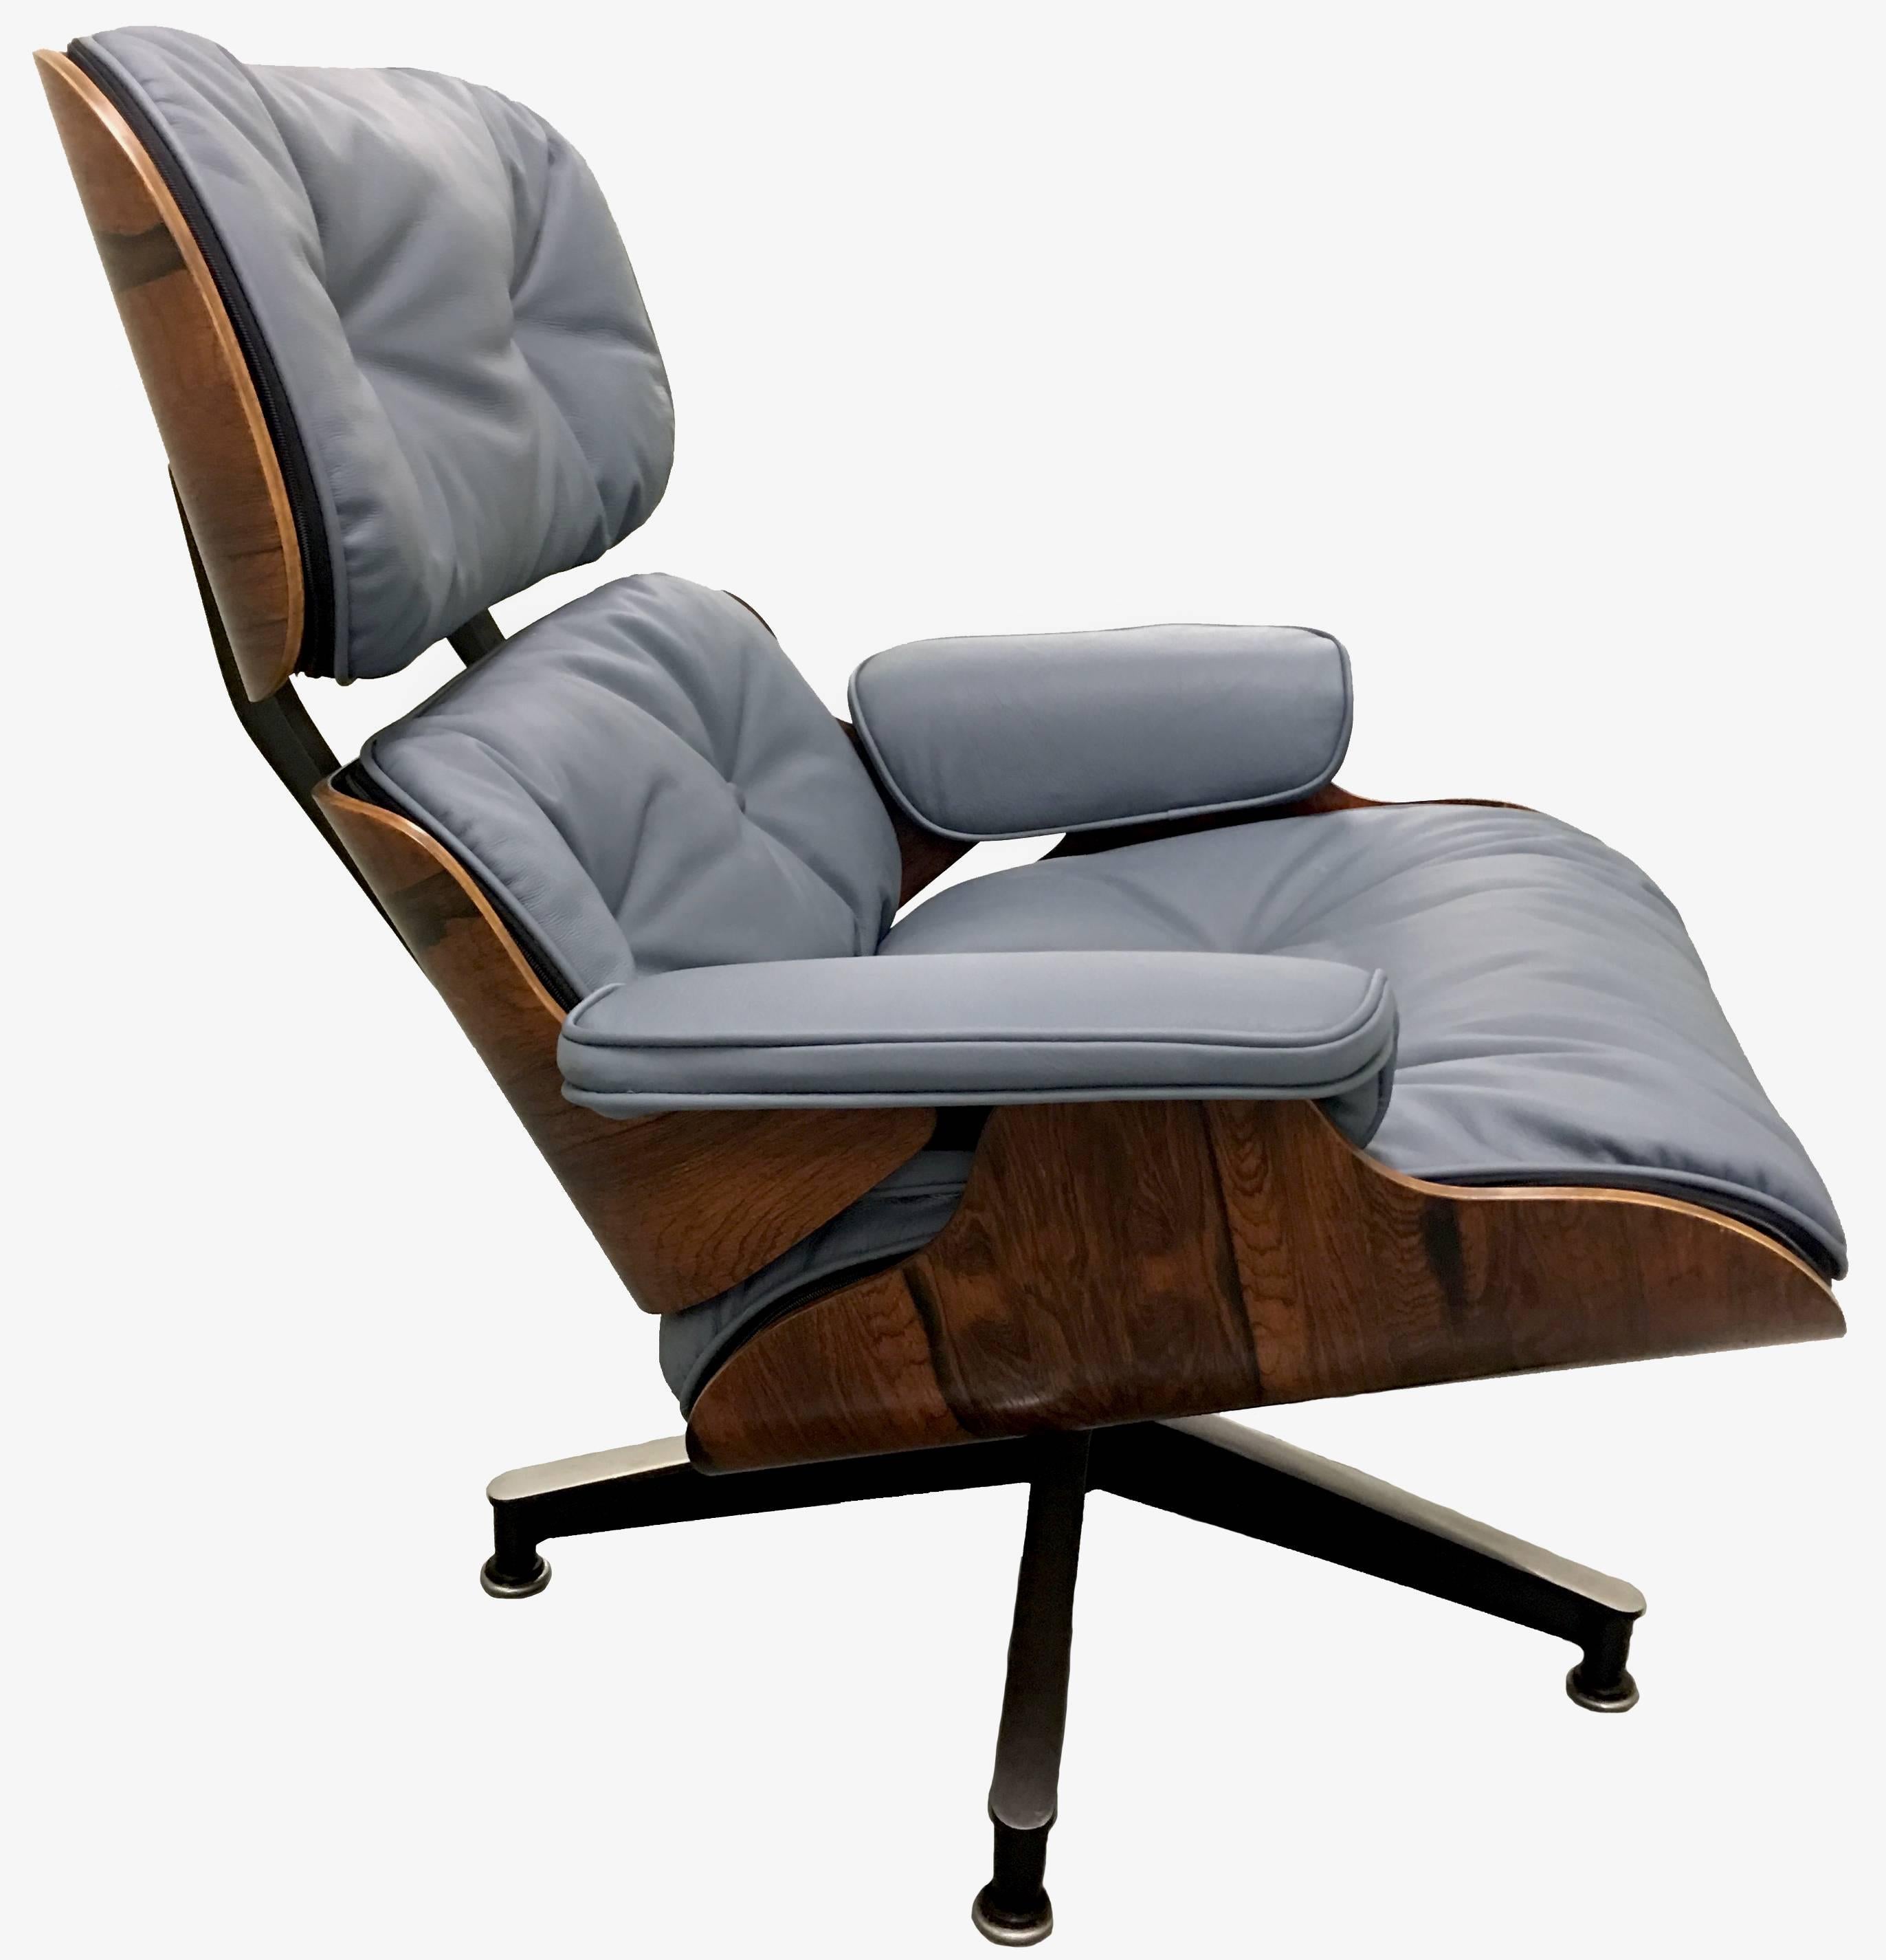 1968 Eames für Herman Miller Palisanderholz 670 Lounge Chair und 671 Ottomane. Neu gepolstert mit königlichem Leder 'Deep Space' (grau) von Edelman Leather. Das Set ist in neuwertigem Zustand und der Stuhl hat noch die Originaletiketten.